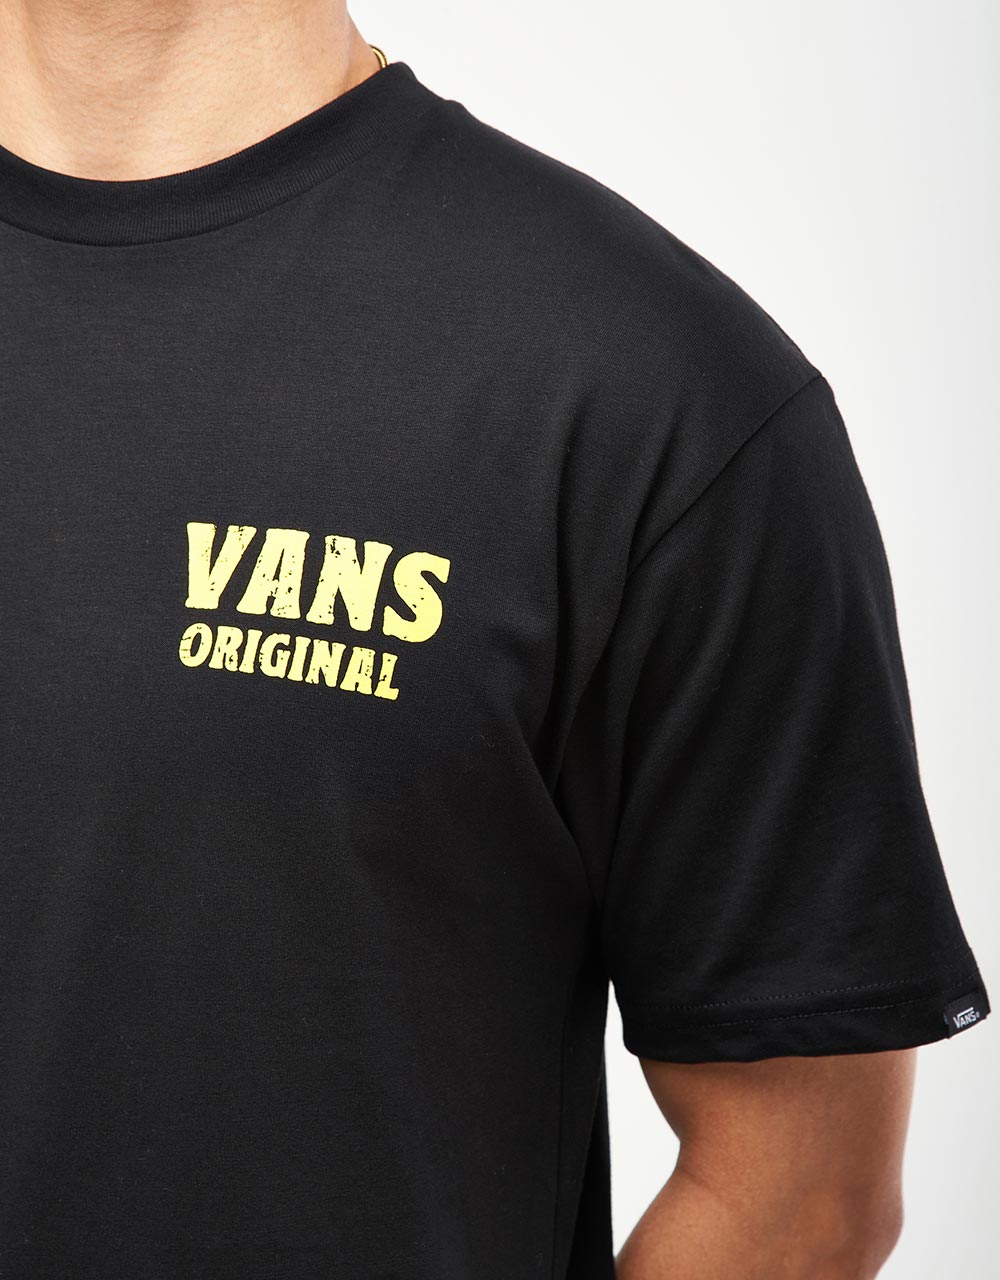 Vans Wave Cheers UK EXCLUSIVE T-Shirt - Black